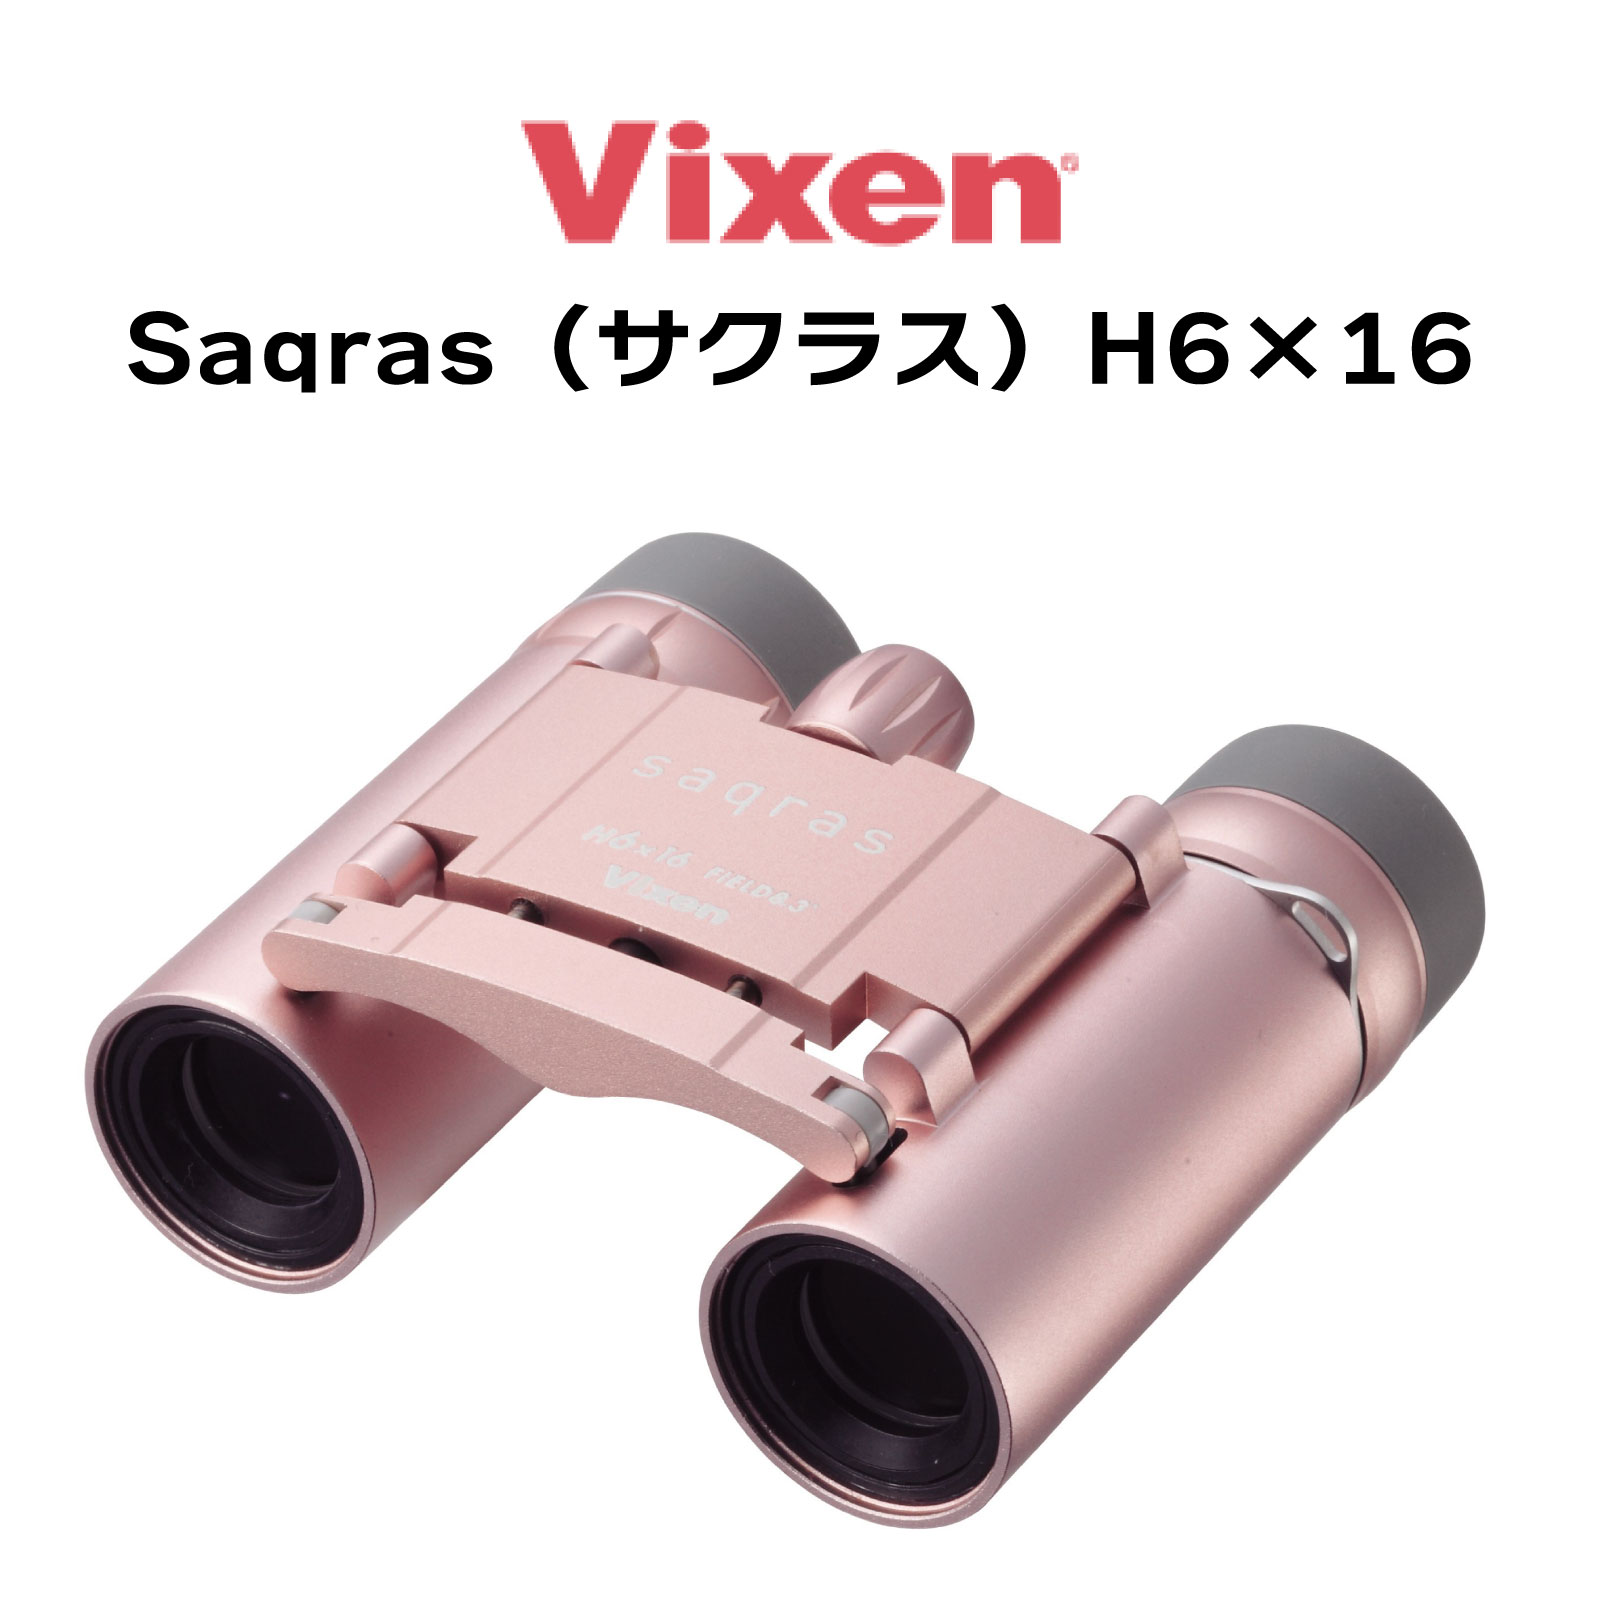 【年中無休 あす楽】 Vixen ビクセン 双眼鏡 Saqras サクラス H6 16 16481-3 6倍 女性のための双眼鏡 軽い おしゃれ かわいい 日本製 コンパクト 小型 軽量ボディ